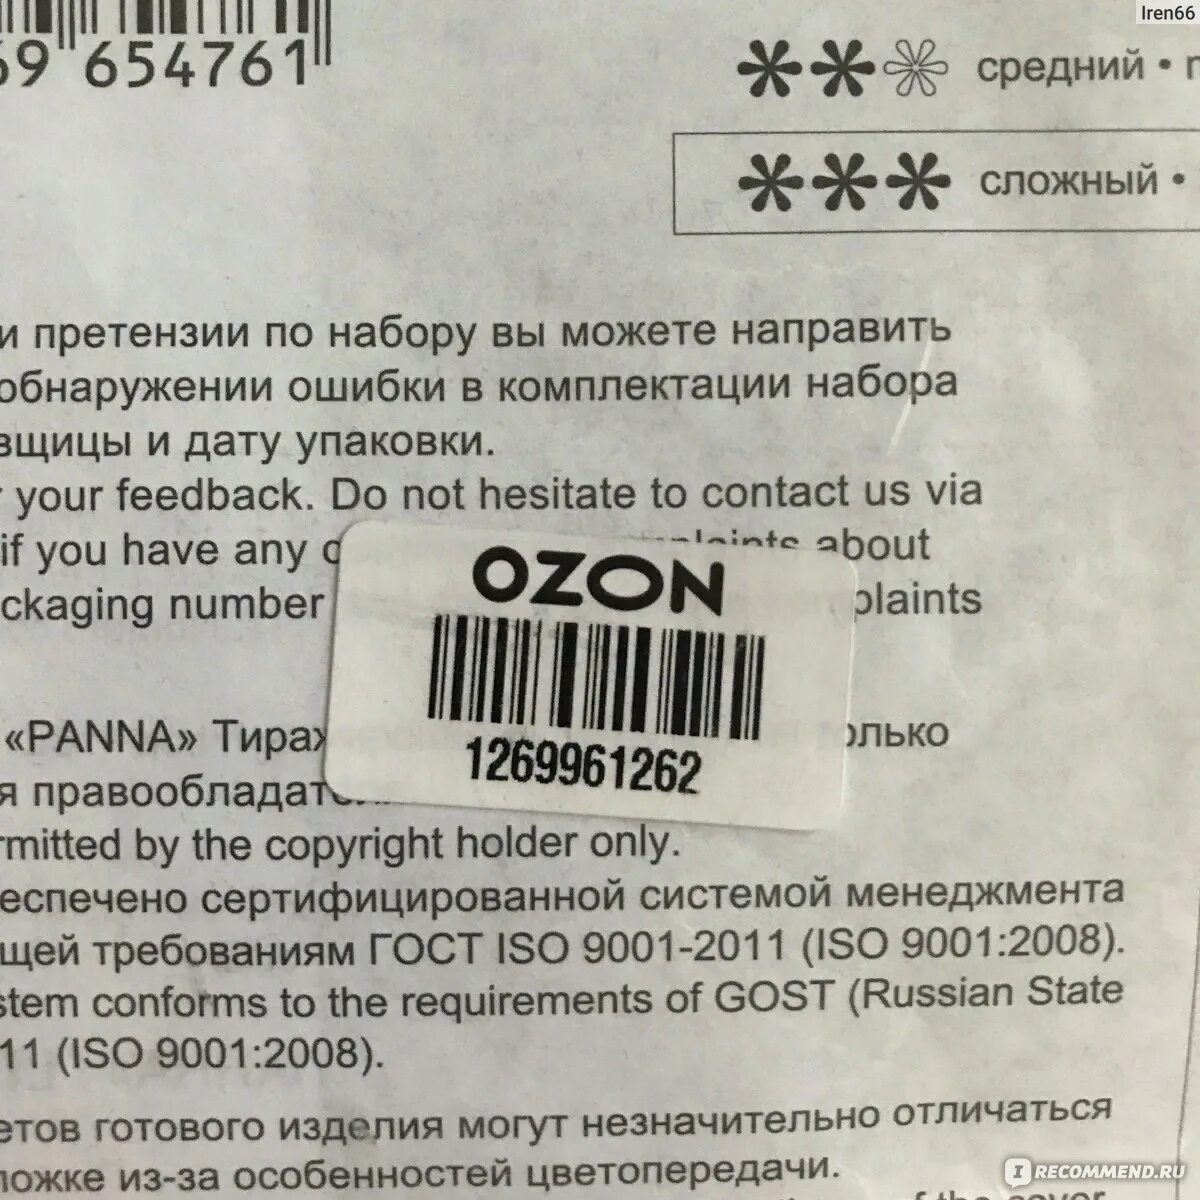 Этикетка на товар для озона. Штрихкод Озон требования. OZON этикетка штрих код. Требования к этикетке Озон. Штрих код для возврата